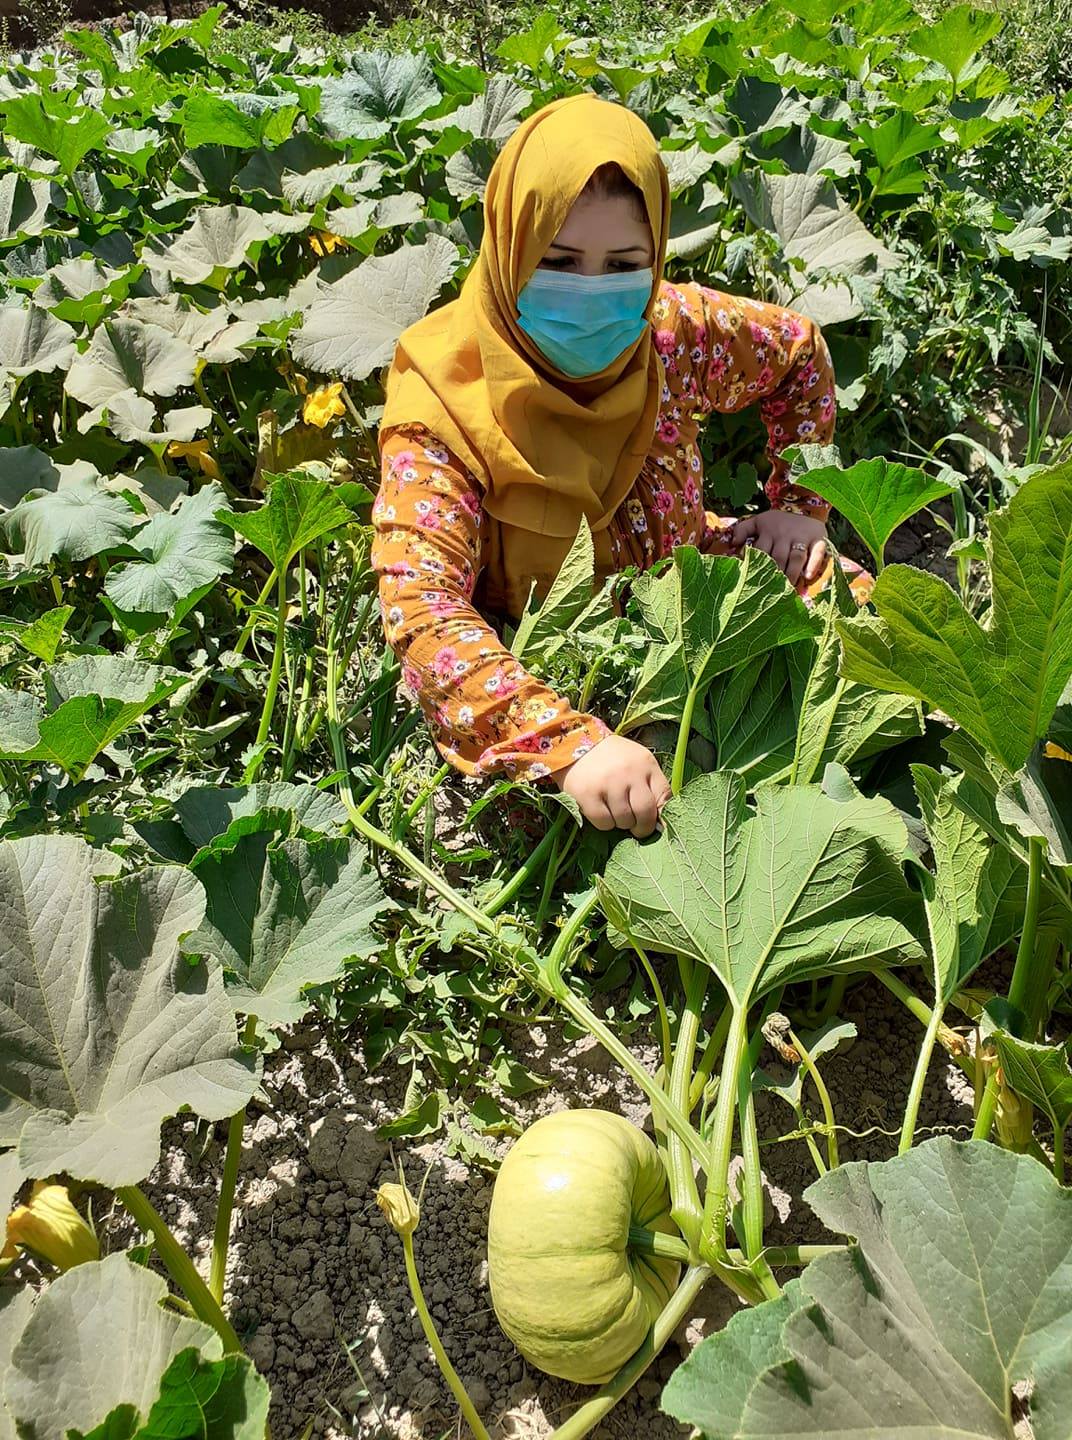 وزارت زراعت برای حدود دو هزار زن در فاریاب فرصت کاری ایجاد کرده است